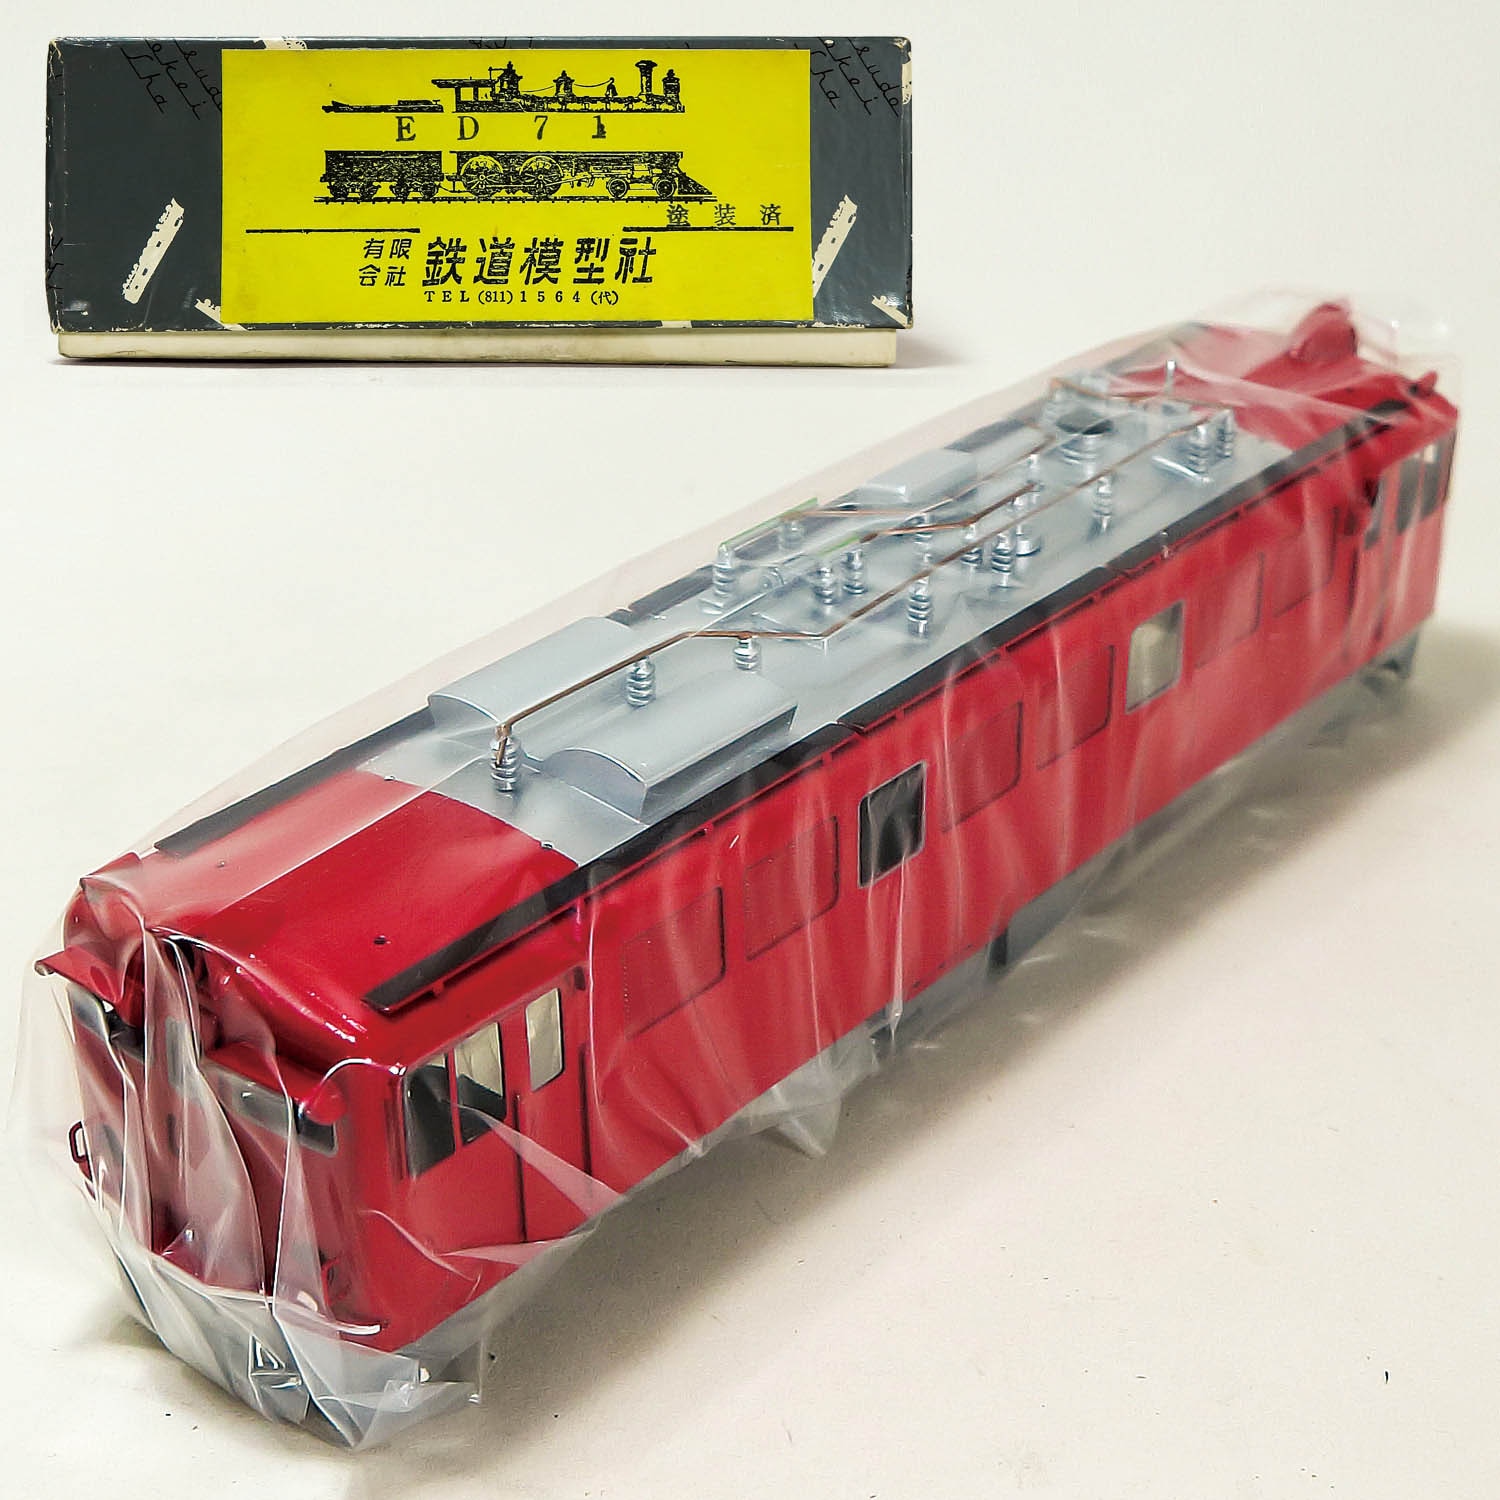 鉄道模型社 ED71 塗装済みキット-